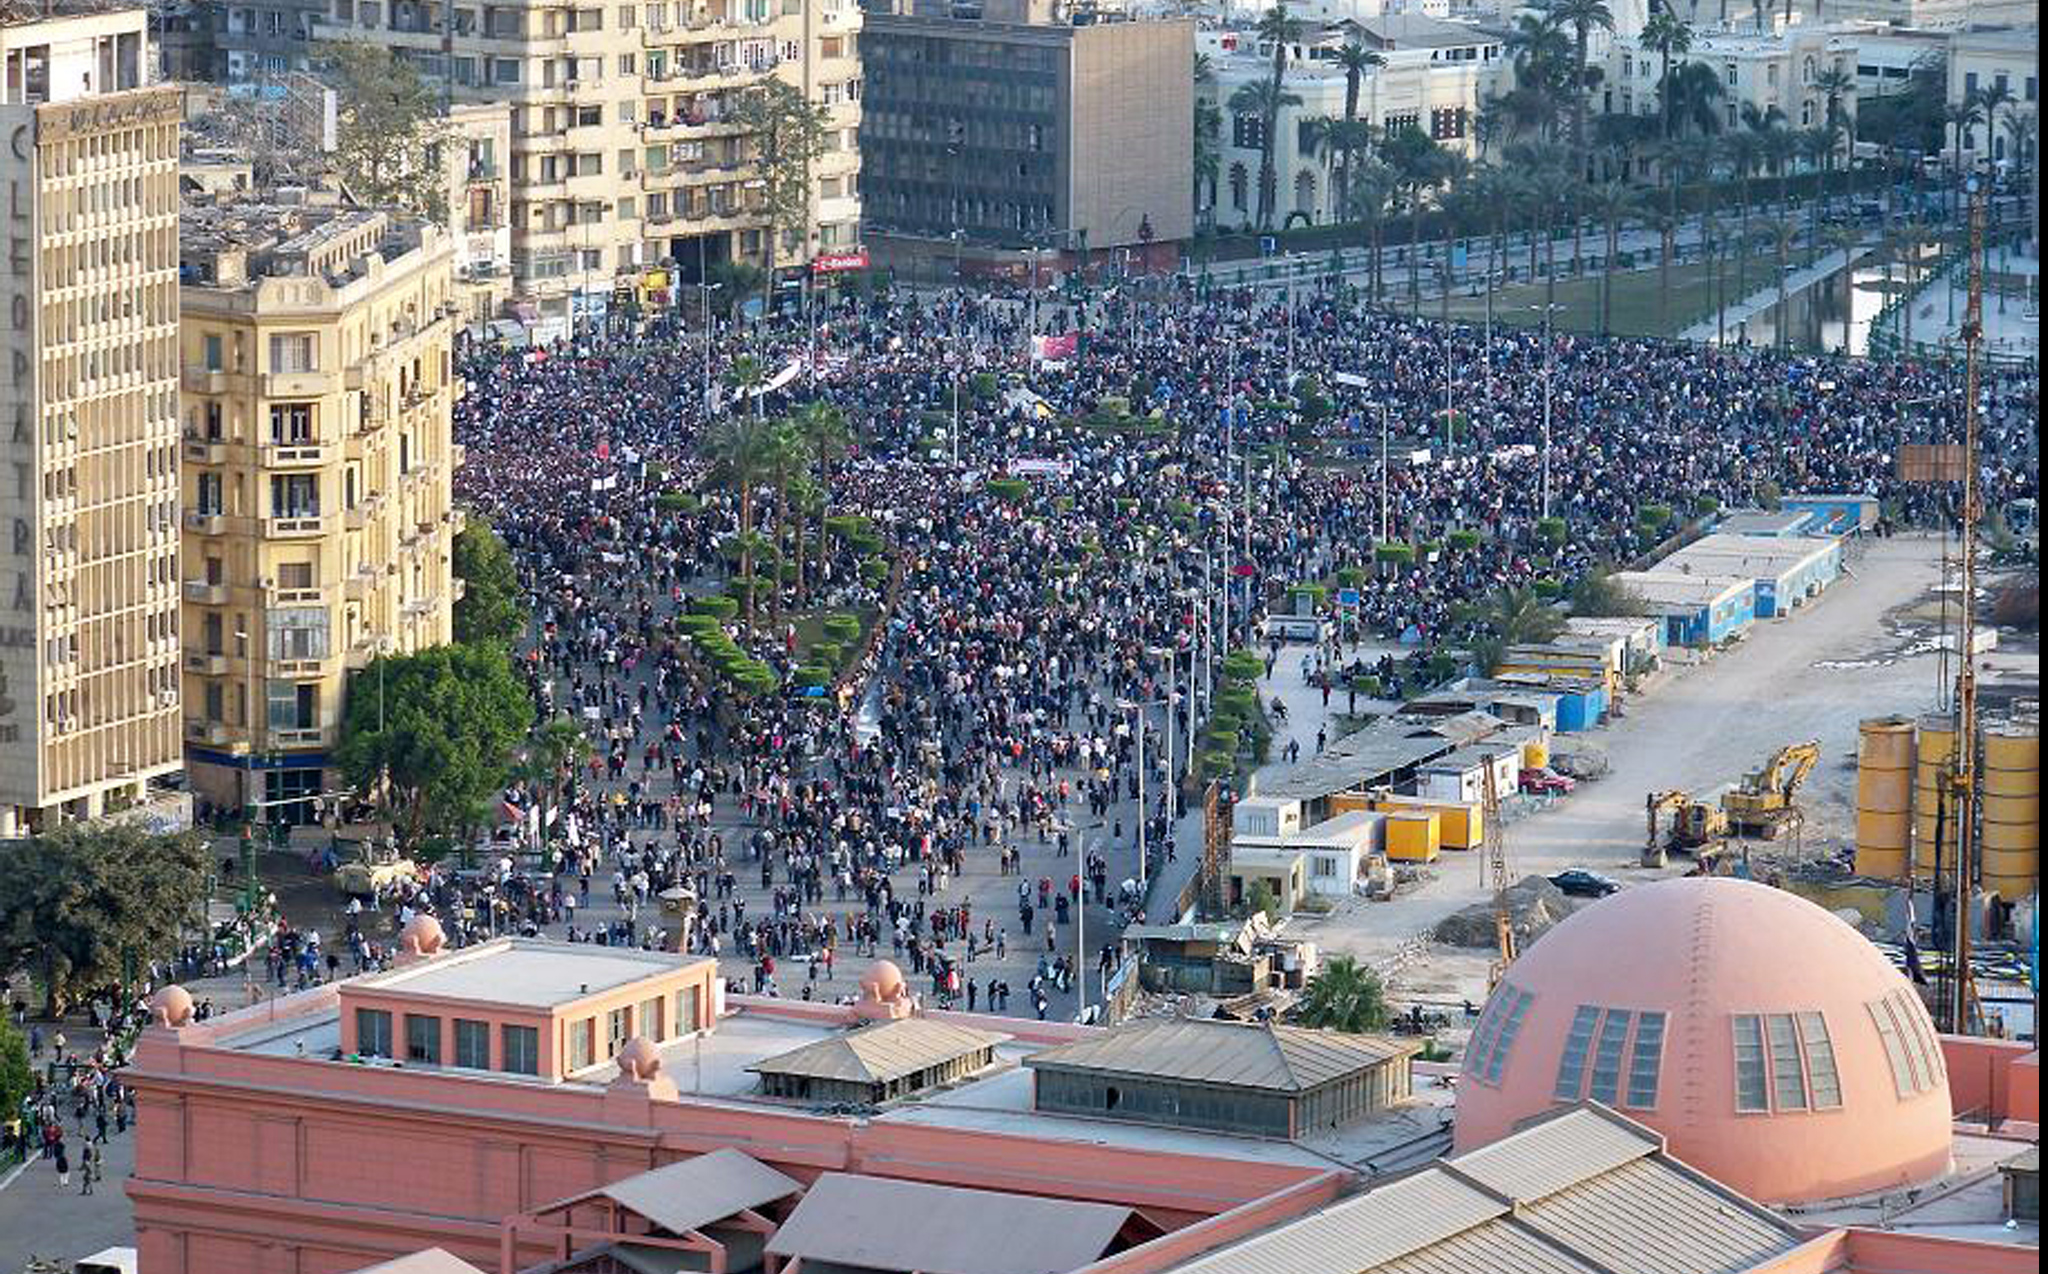 ميدان التحرير هو القلب النابض للثورة المصرية. <br>
(الصورة لعادل قسطل)